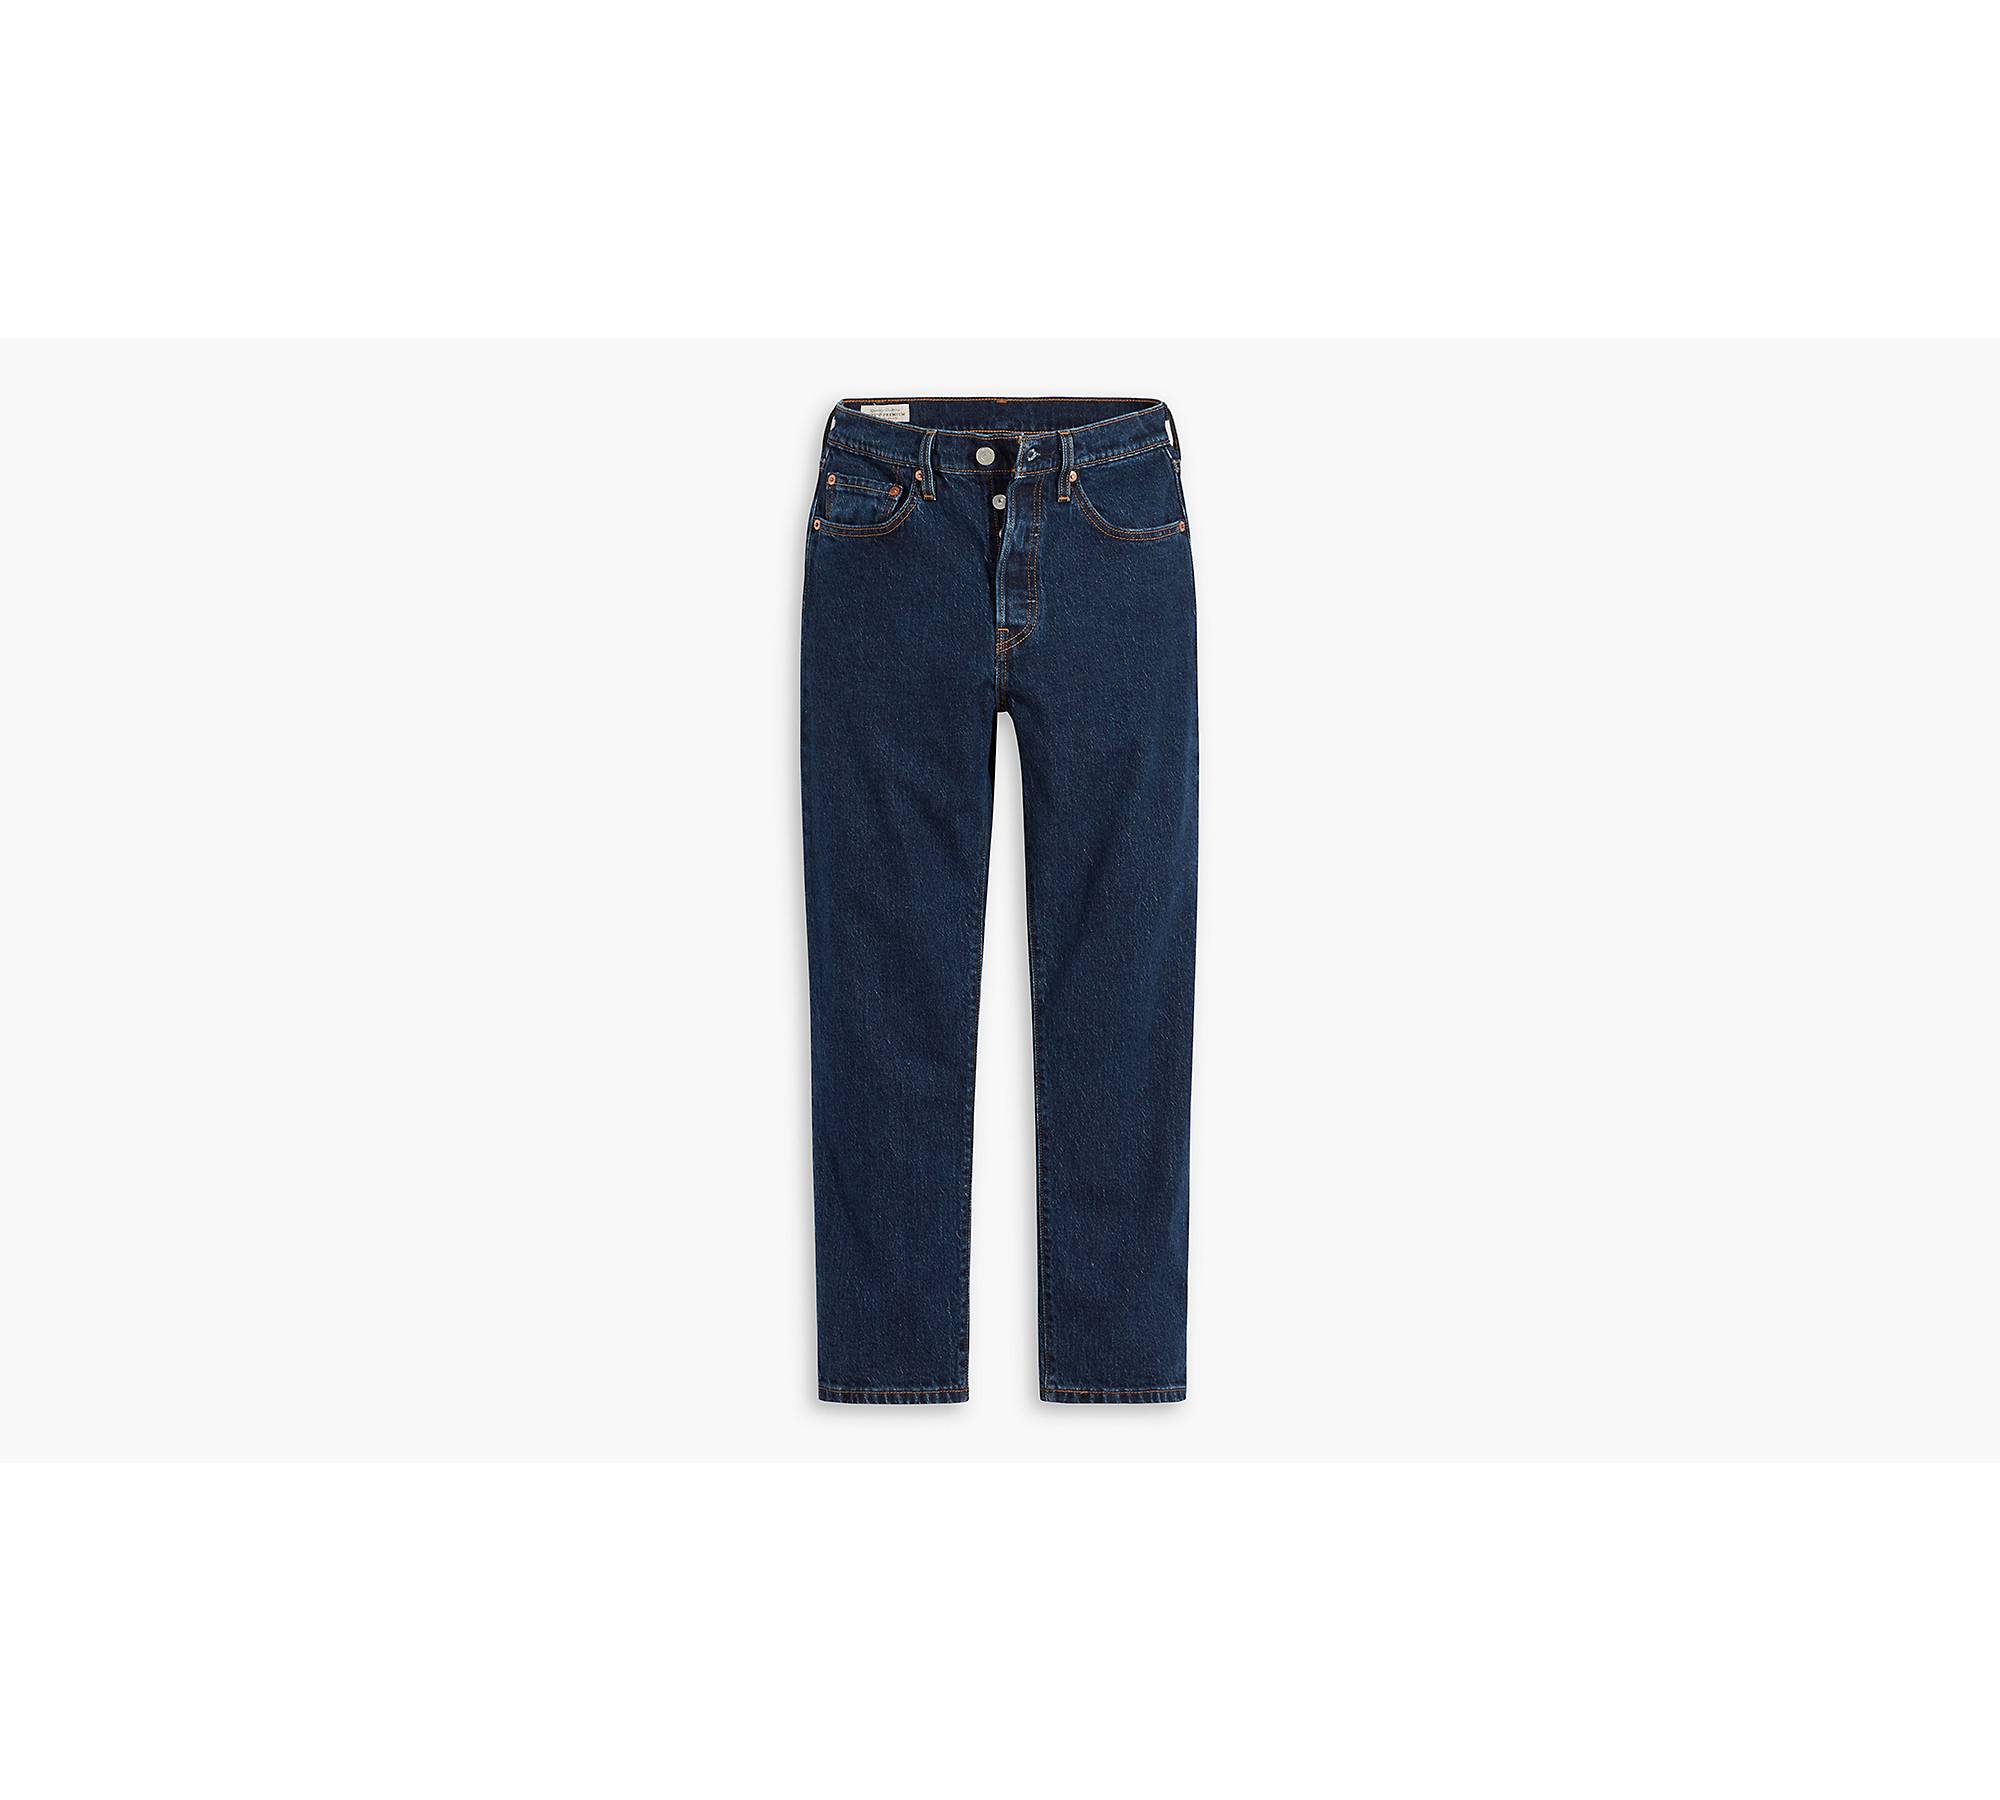 Levi's 501 Crop Jeans - Pink Denim Jeans - Women's Denim Jeans - Lulus